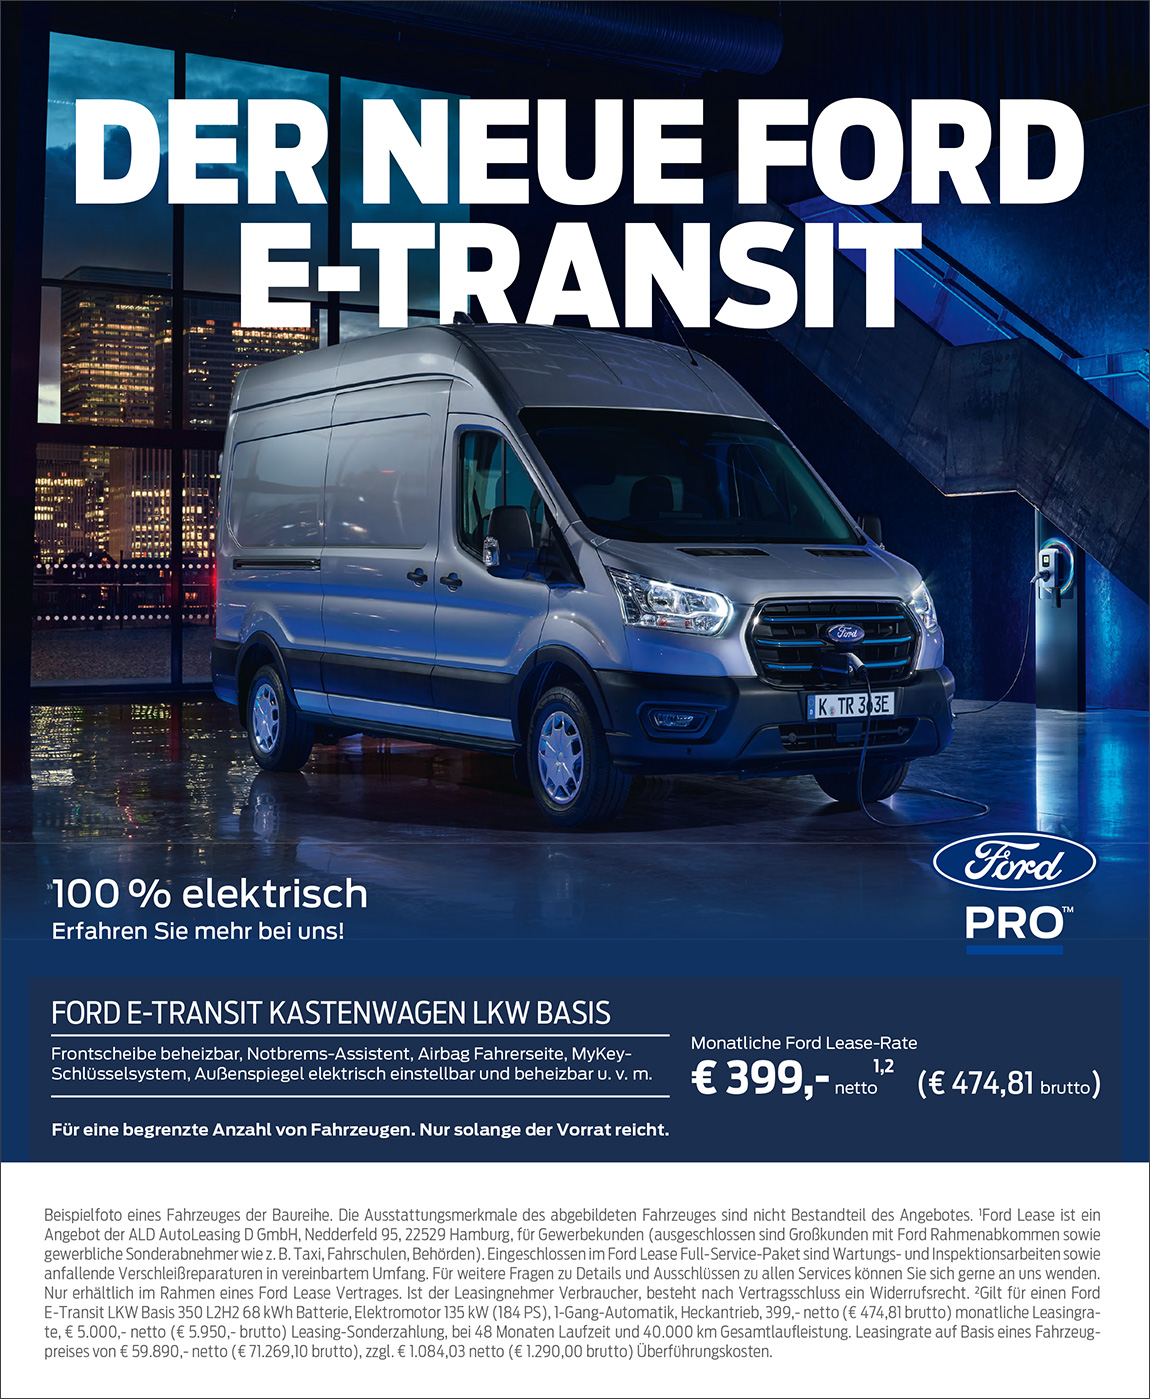 Der Neue Ford E-Transit